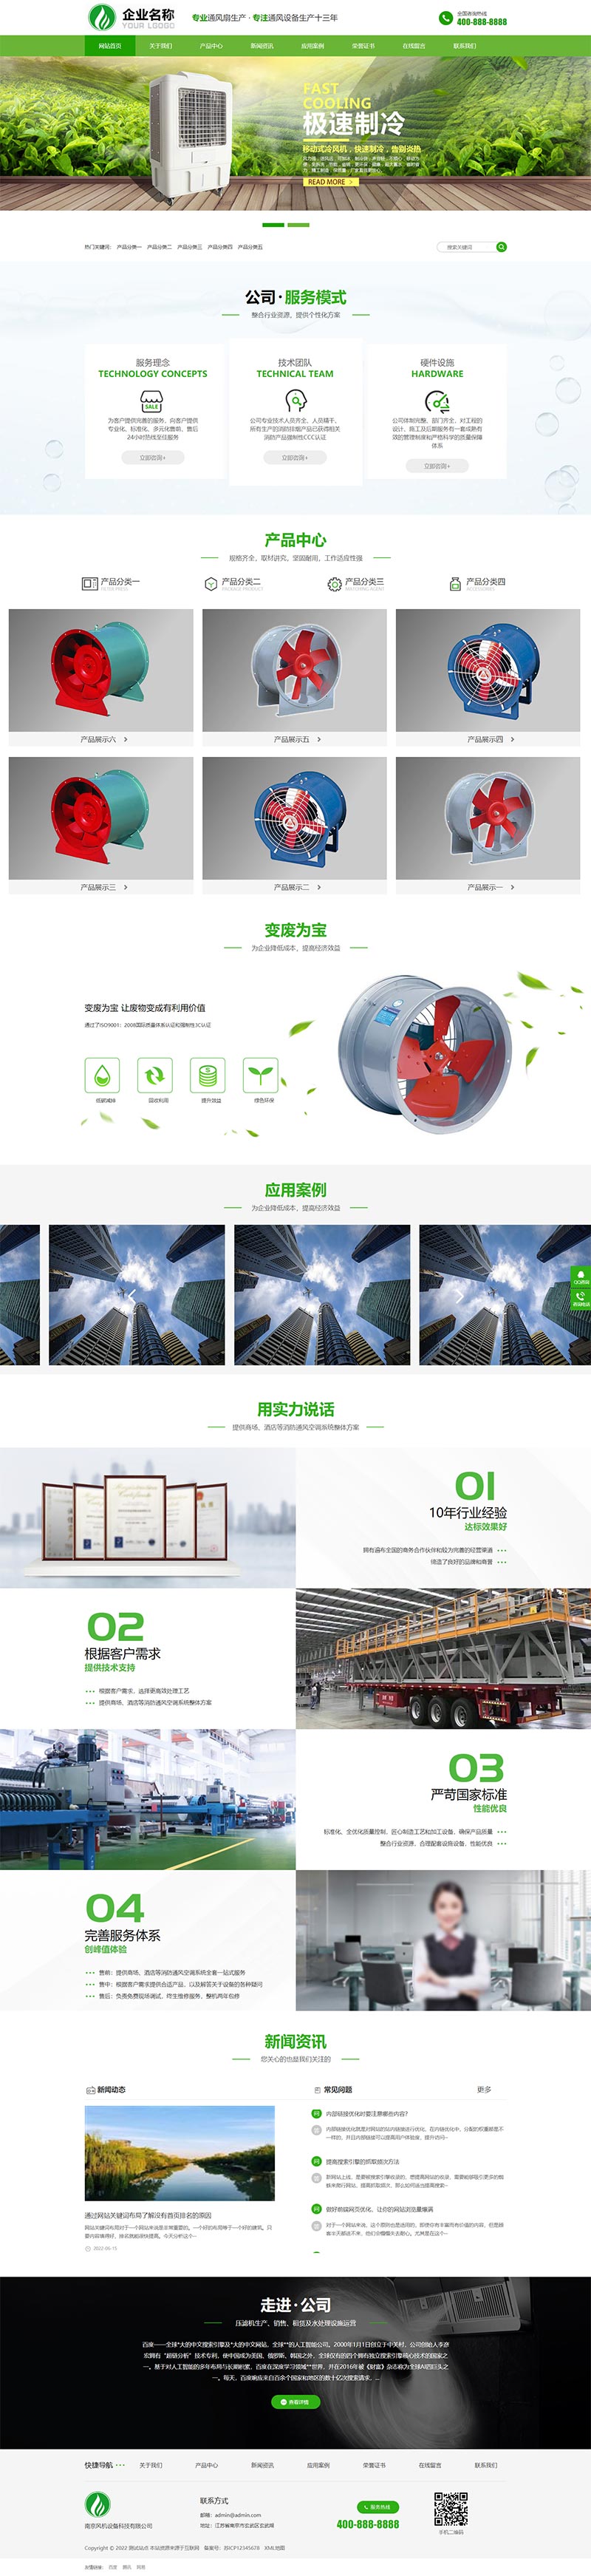 响应式HTML5绿色大气环保机电模板 风机机械设备企业营销型源码下载